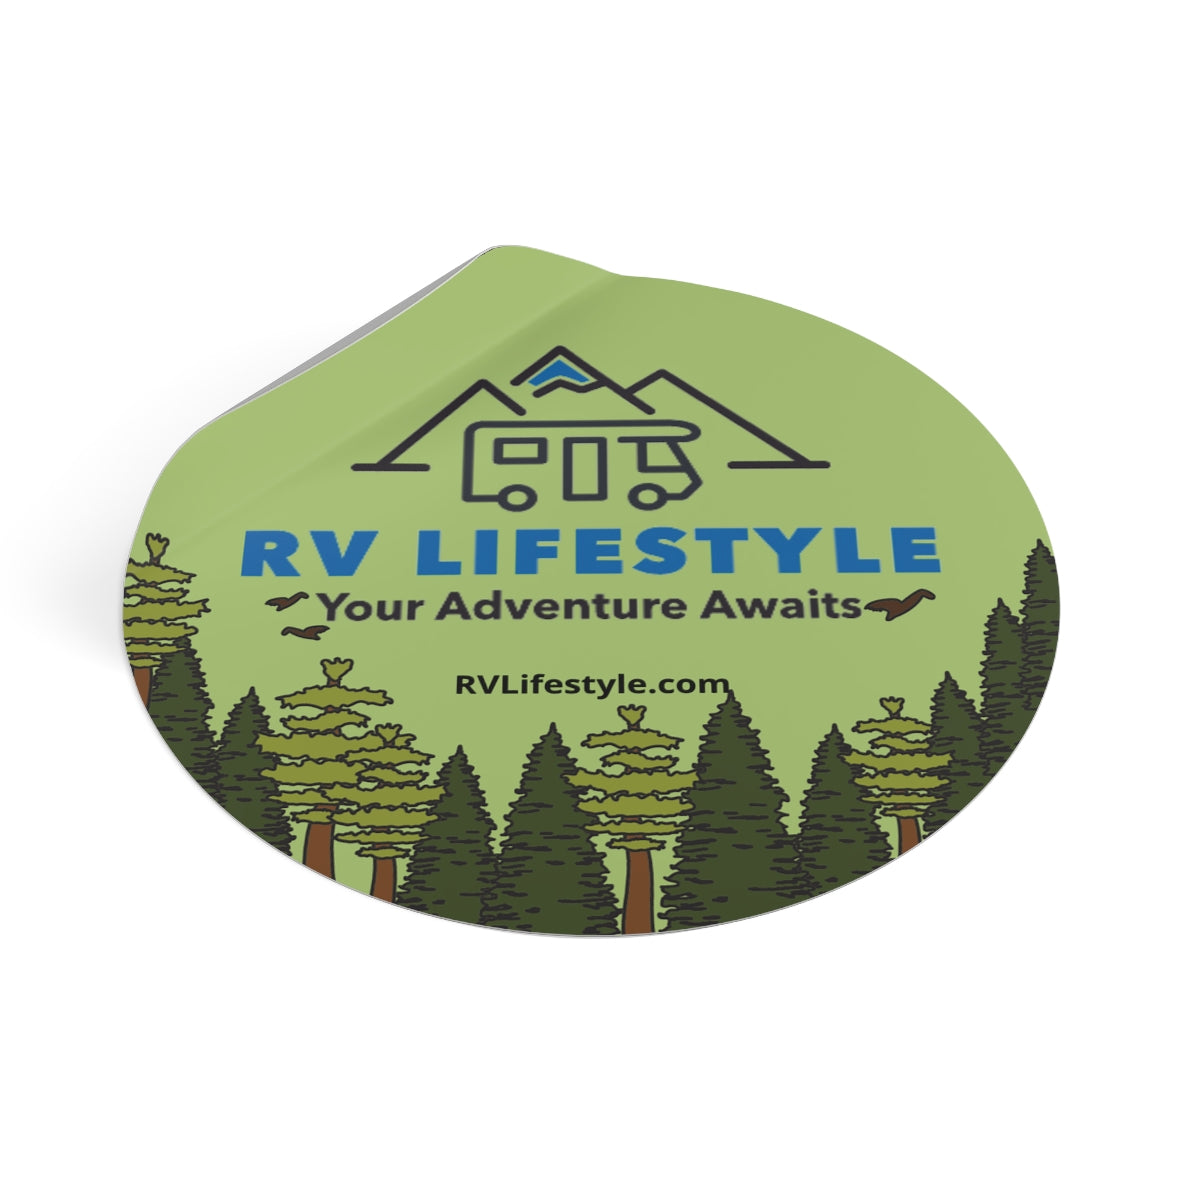 RV Lifestyle Your Adventure Awaits Round Vinyl Sticker